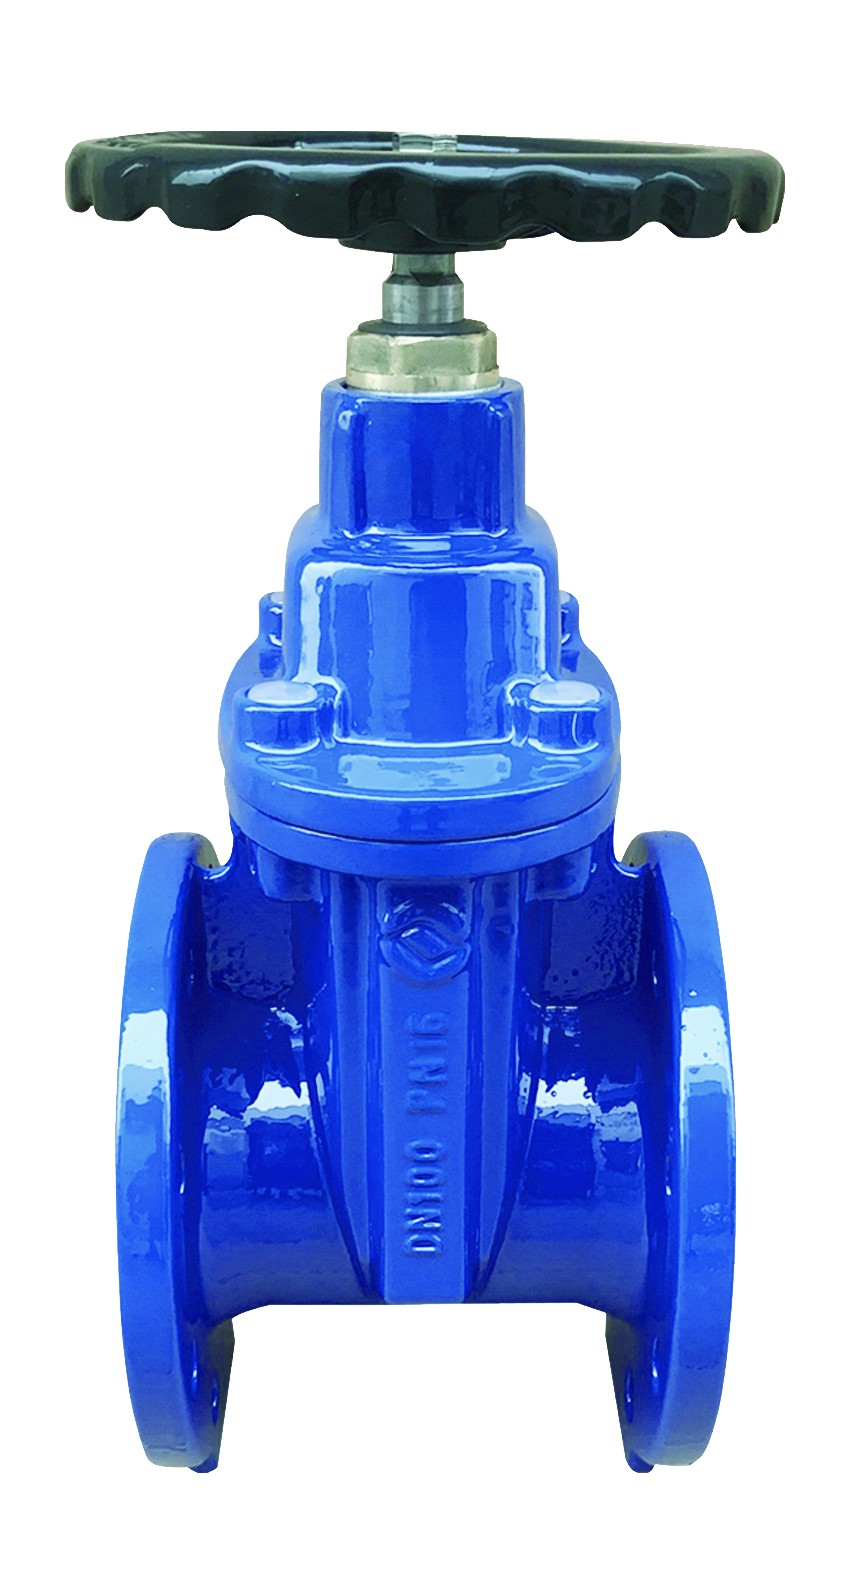 Rexroth S10P50-1X check valve